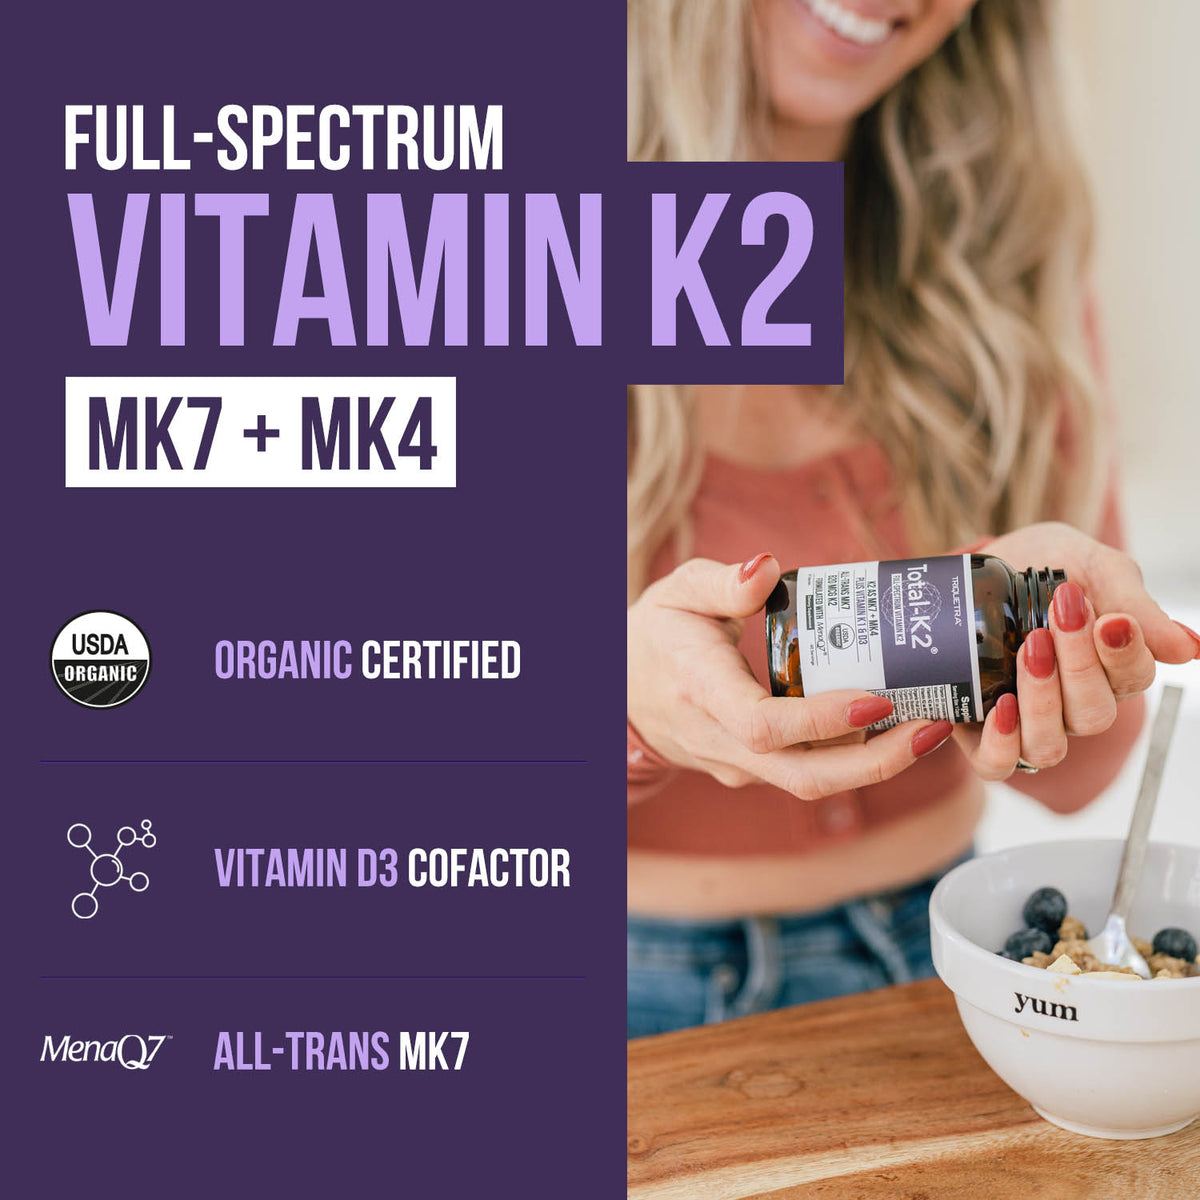 Total-K2 Full Spectrum Vitamin K2